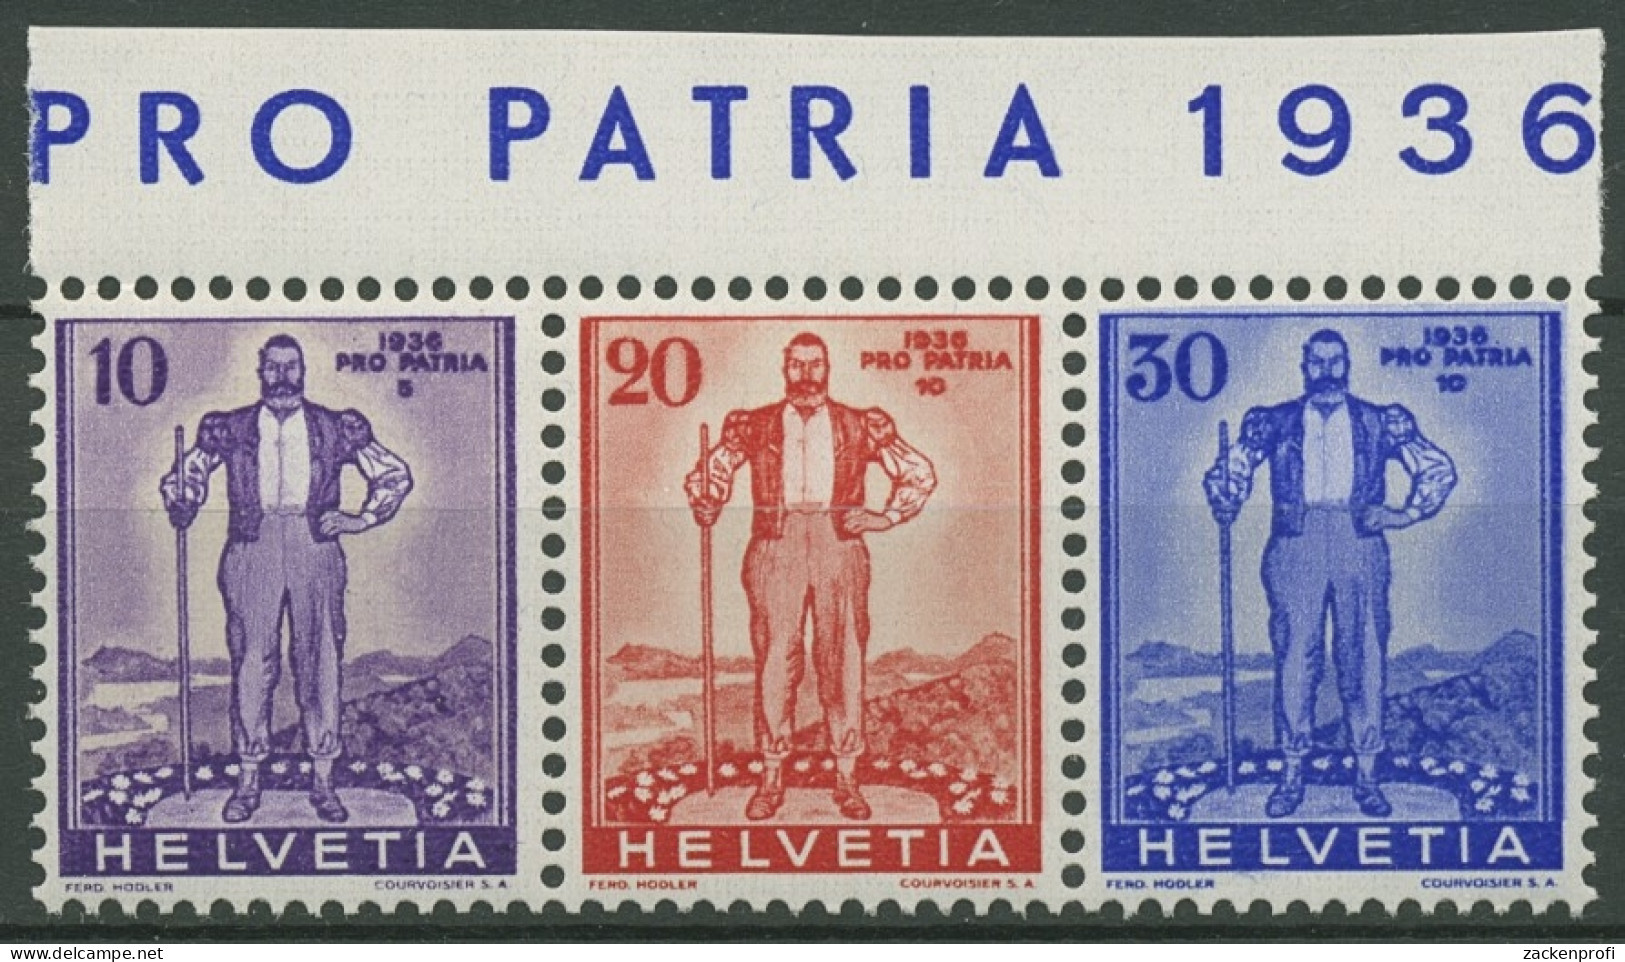 Schweiz 1936 Pro Patria Zusammendruck Aus Block 2, A 294/96 ZD Postfrisch - Nuovi